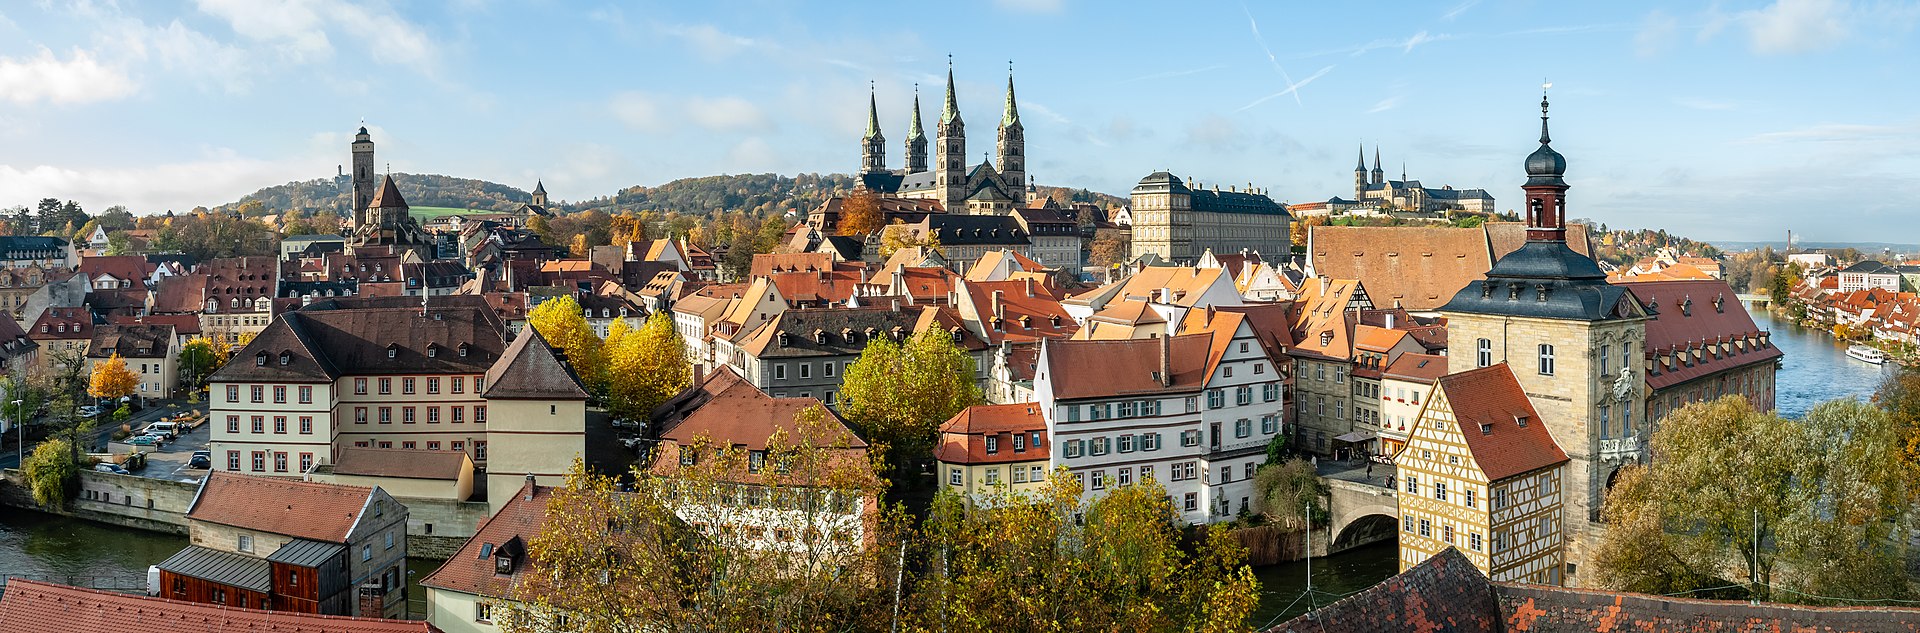 Bamberg - City Panorama